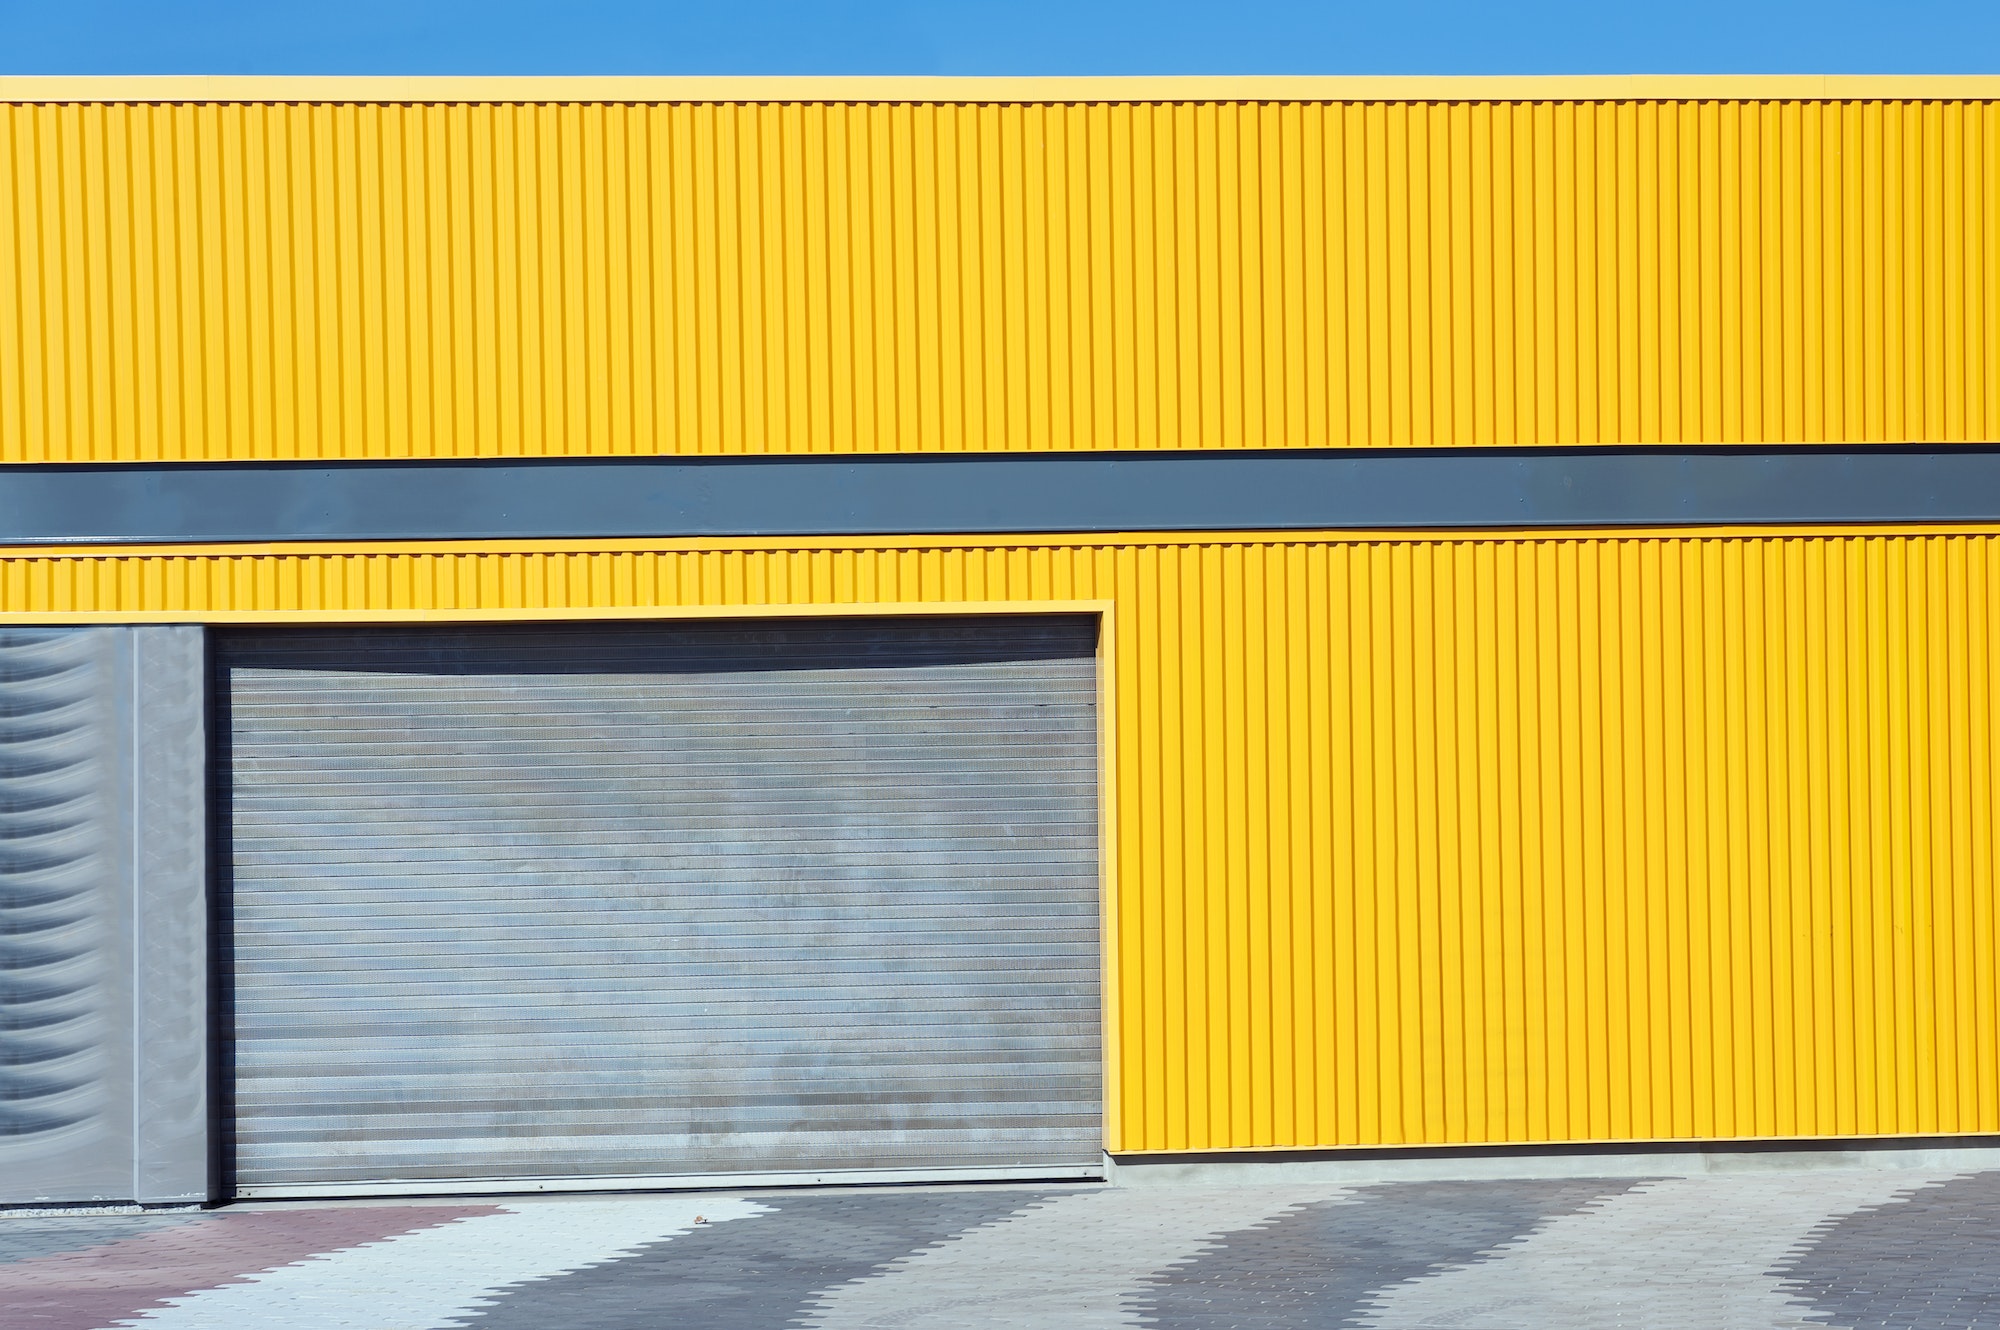 New Modern Garage Door in Unfinish Exterior Yellow Metal Wall